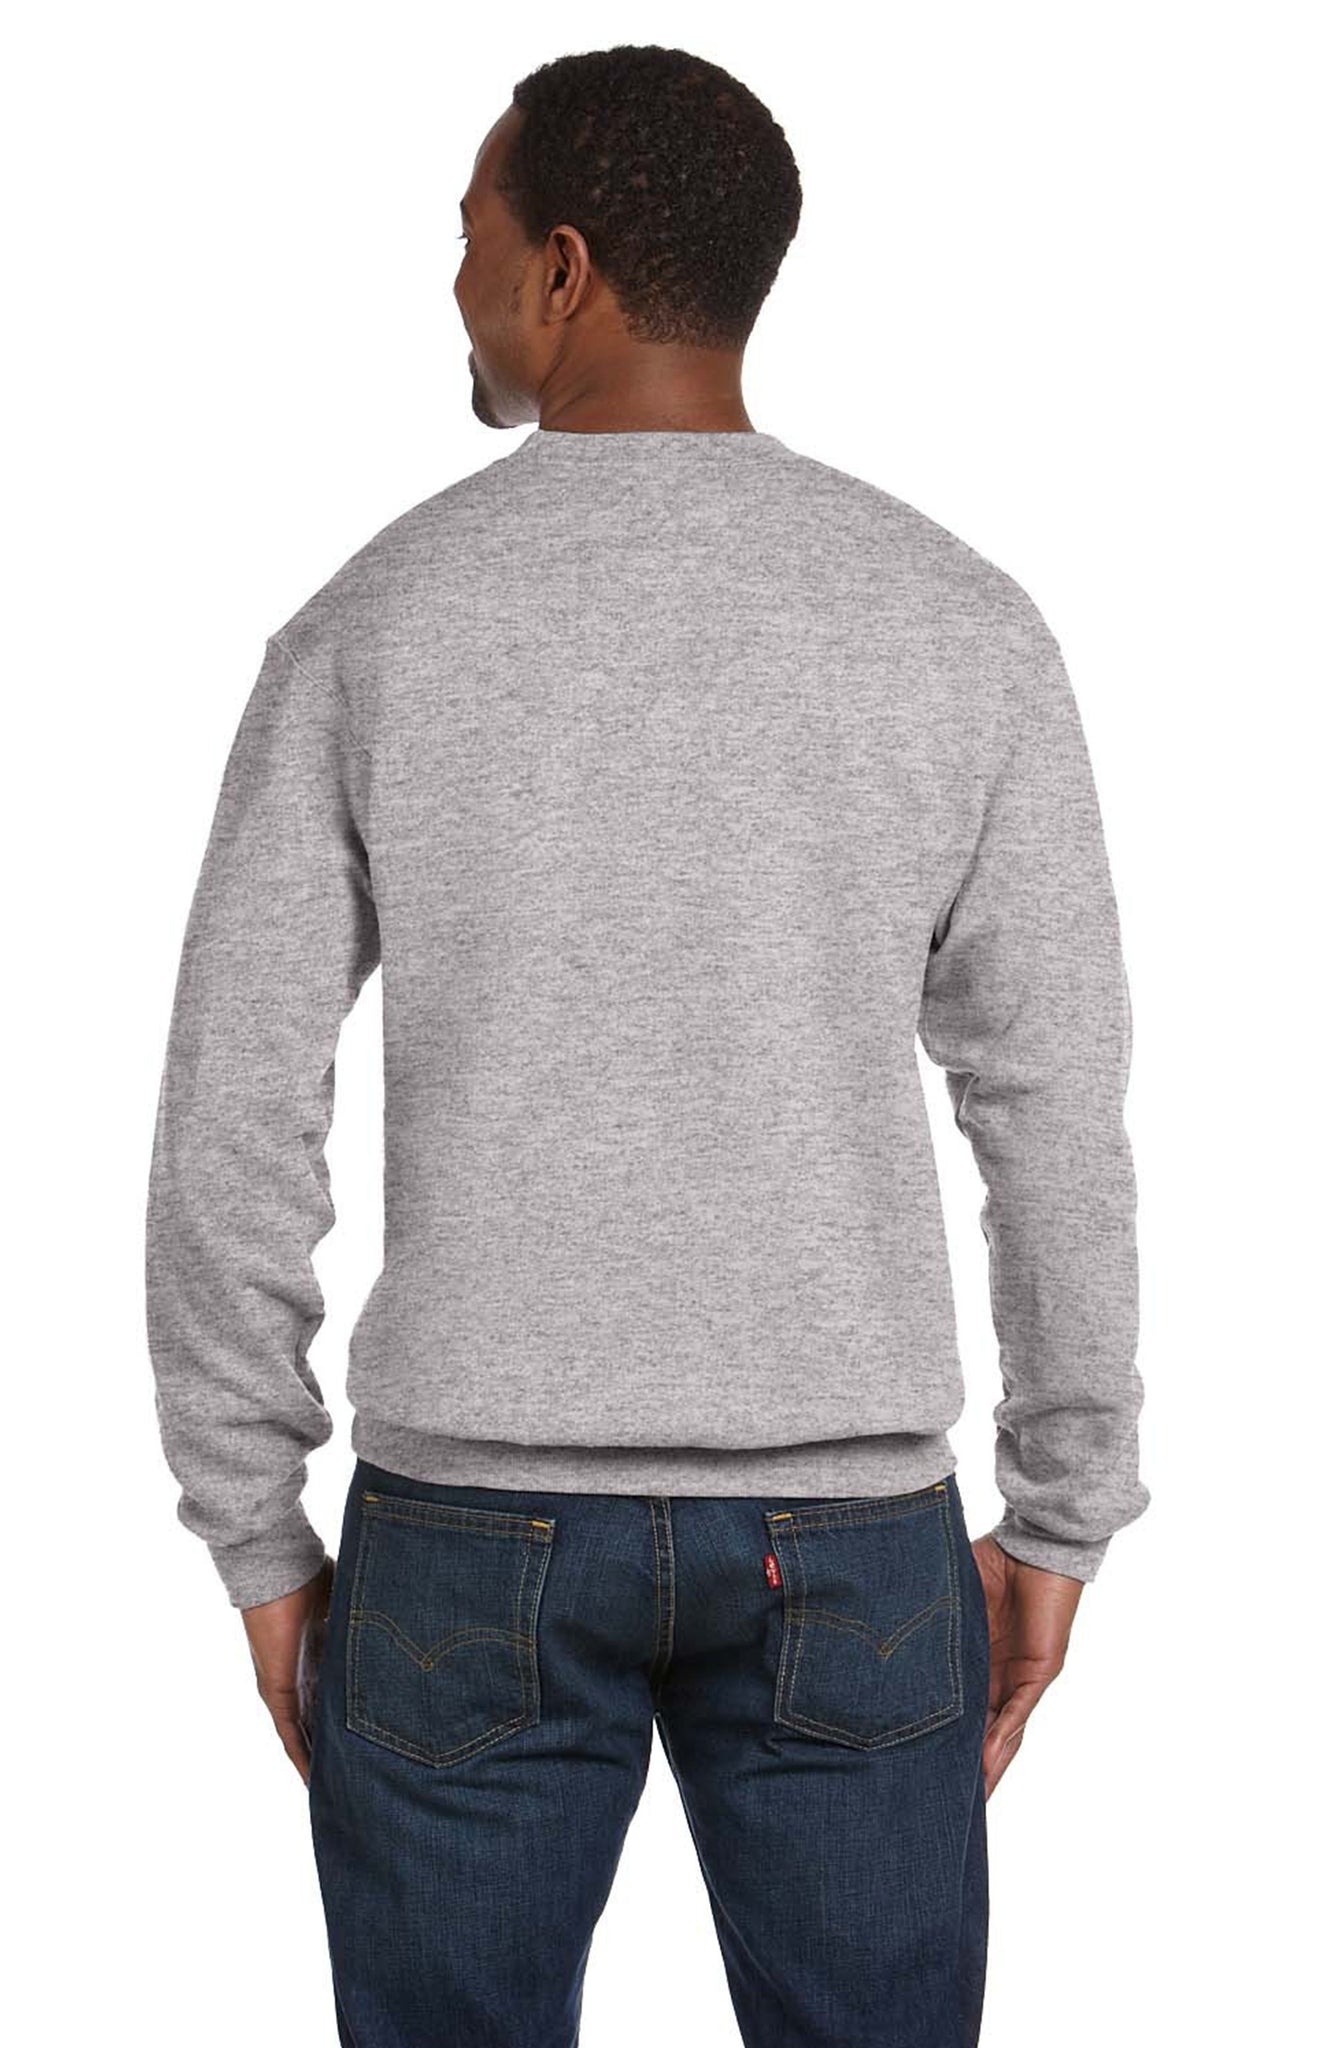 Retro Colorado Unisex Sweatshirt